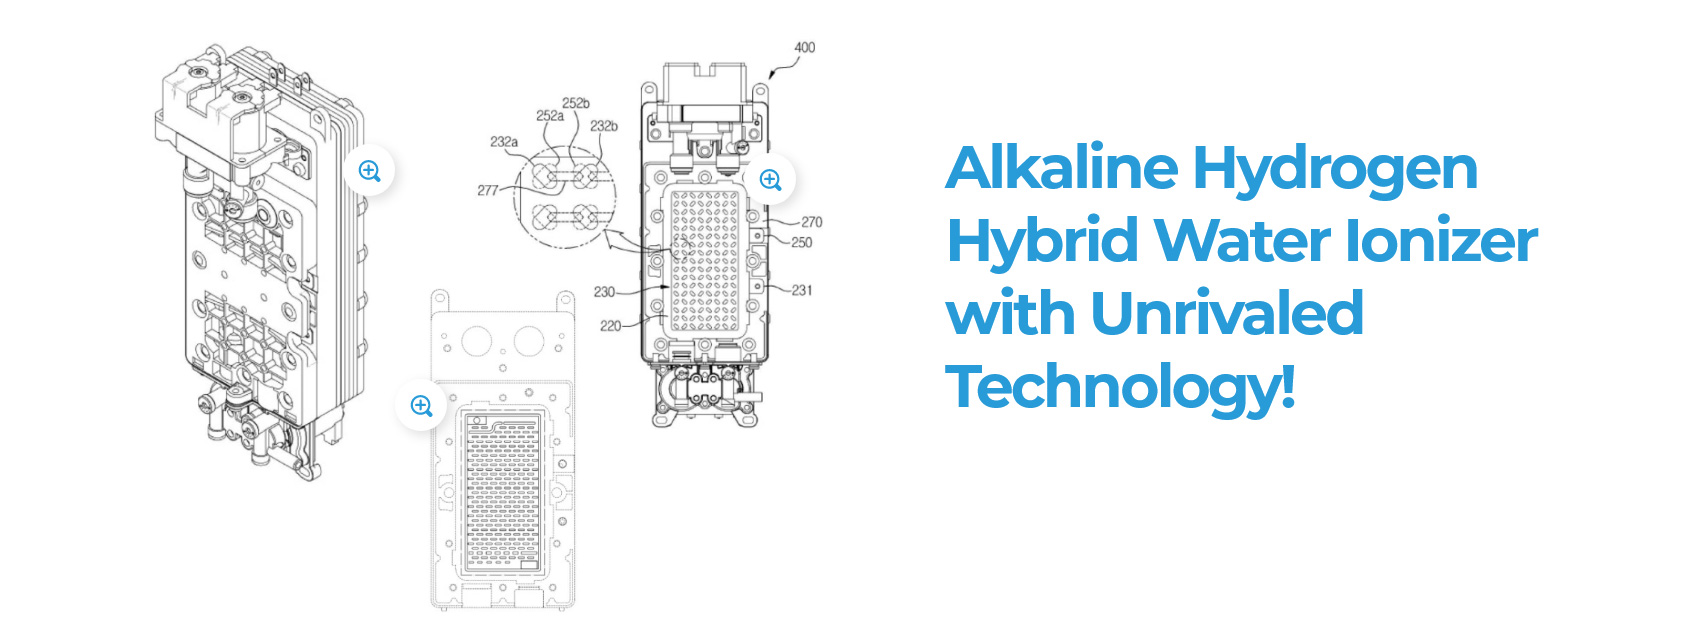 Alkaline Hydrogen Hybrid Water Ionizer with Unrivaled Technology!